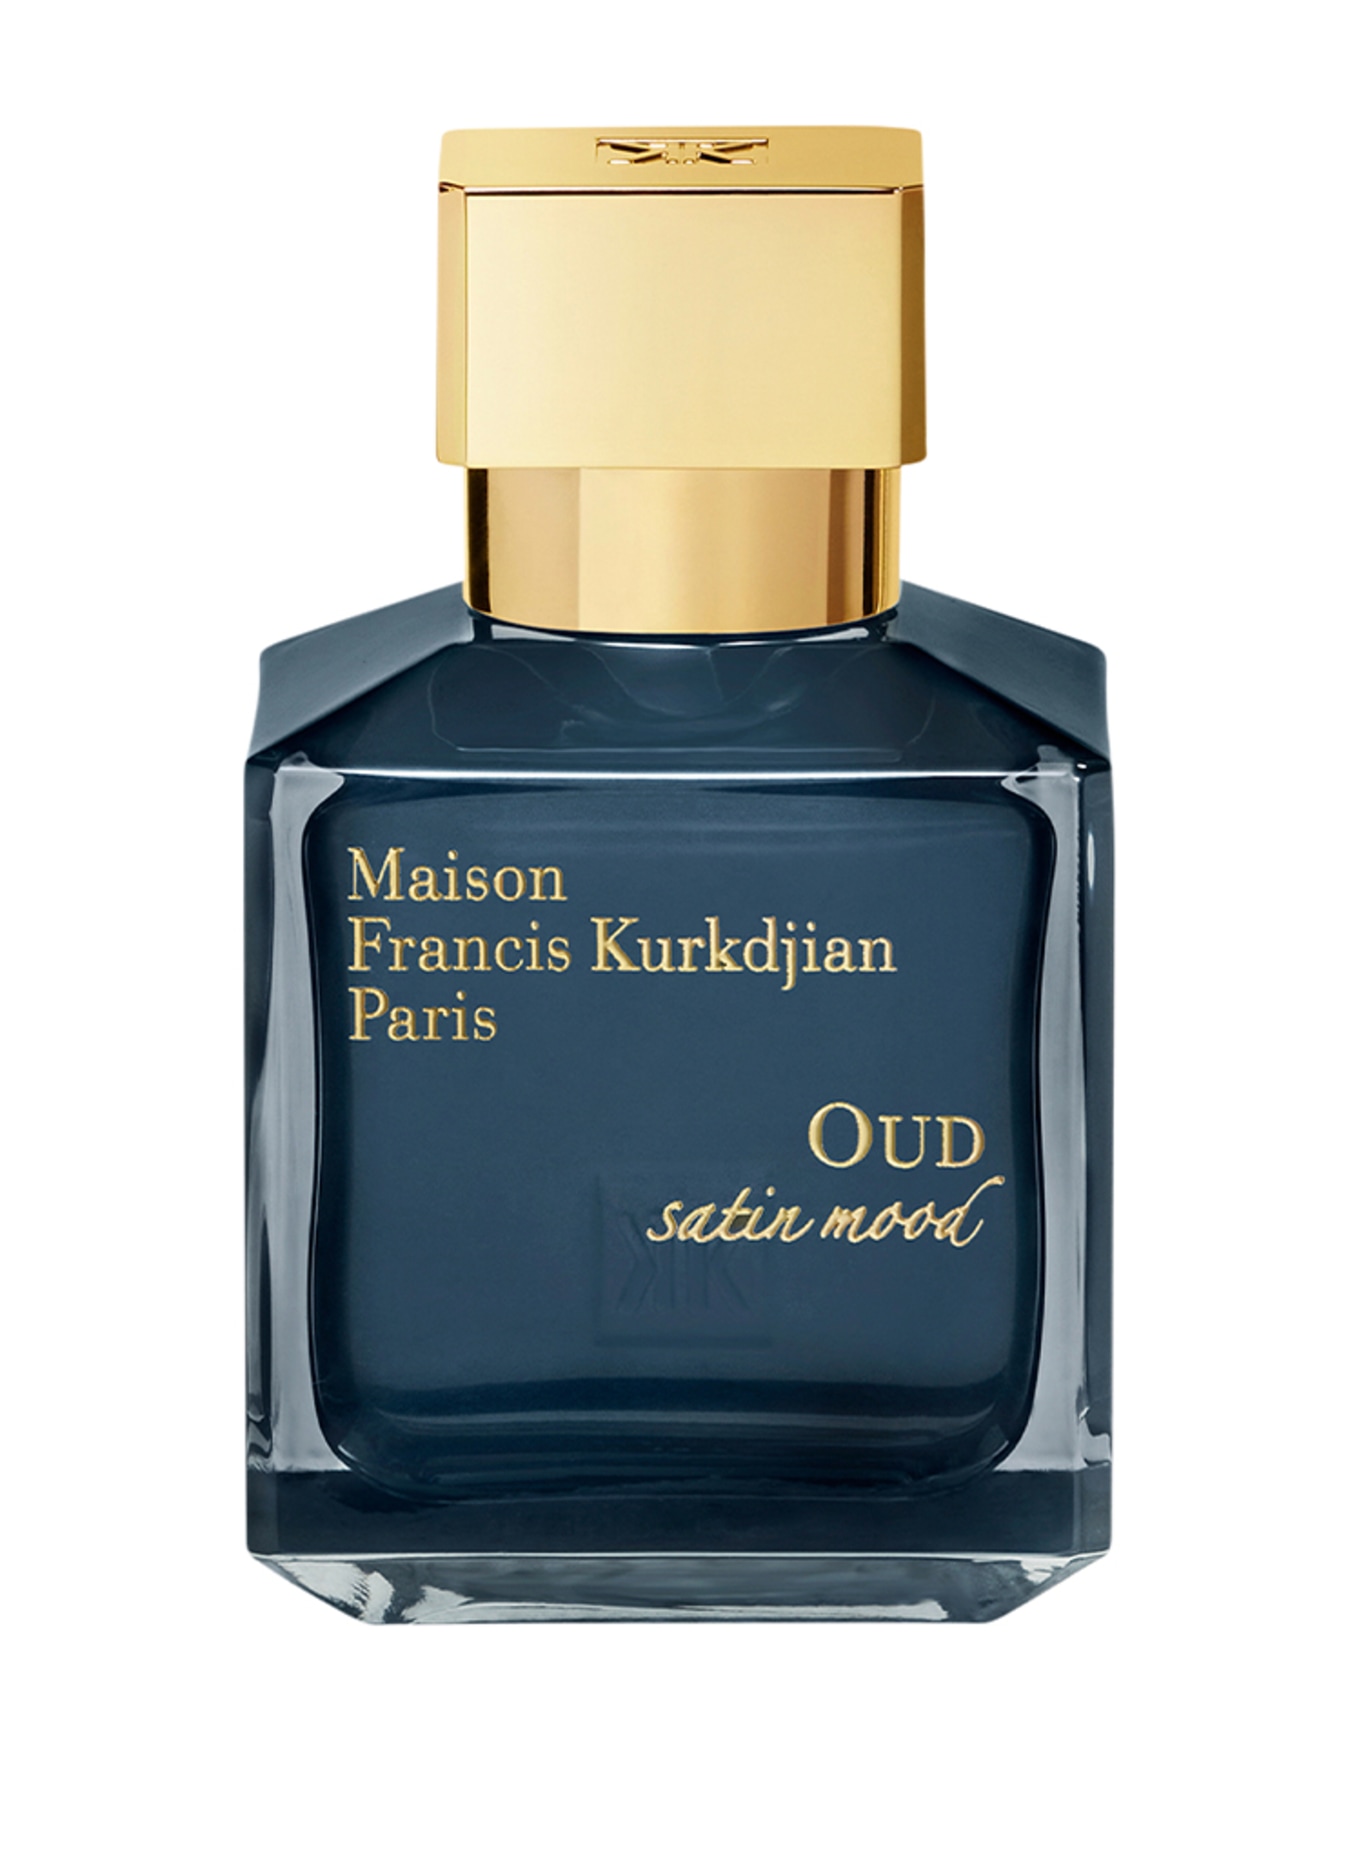 Maison Francis Kurkdjian Paris OUD SATIN MOOD (Obrázek 1)